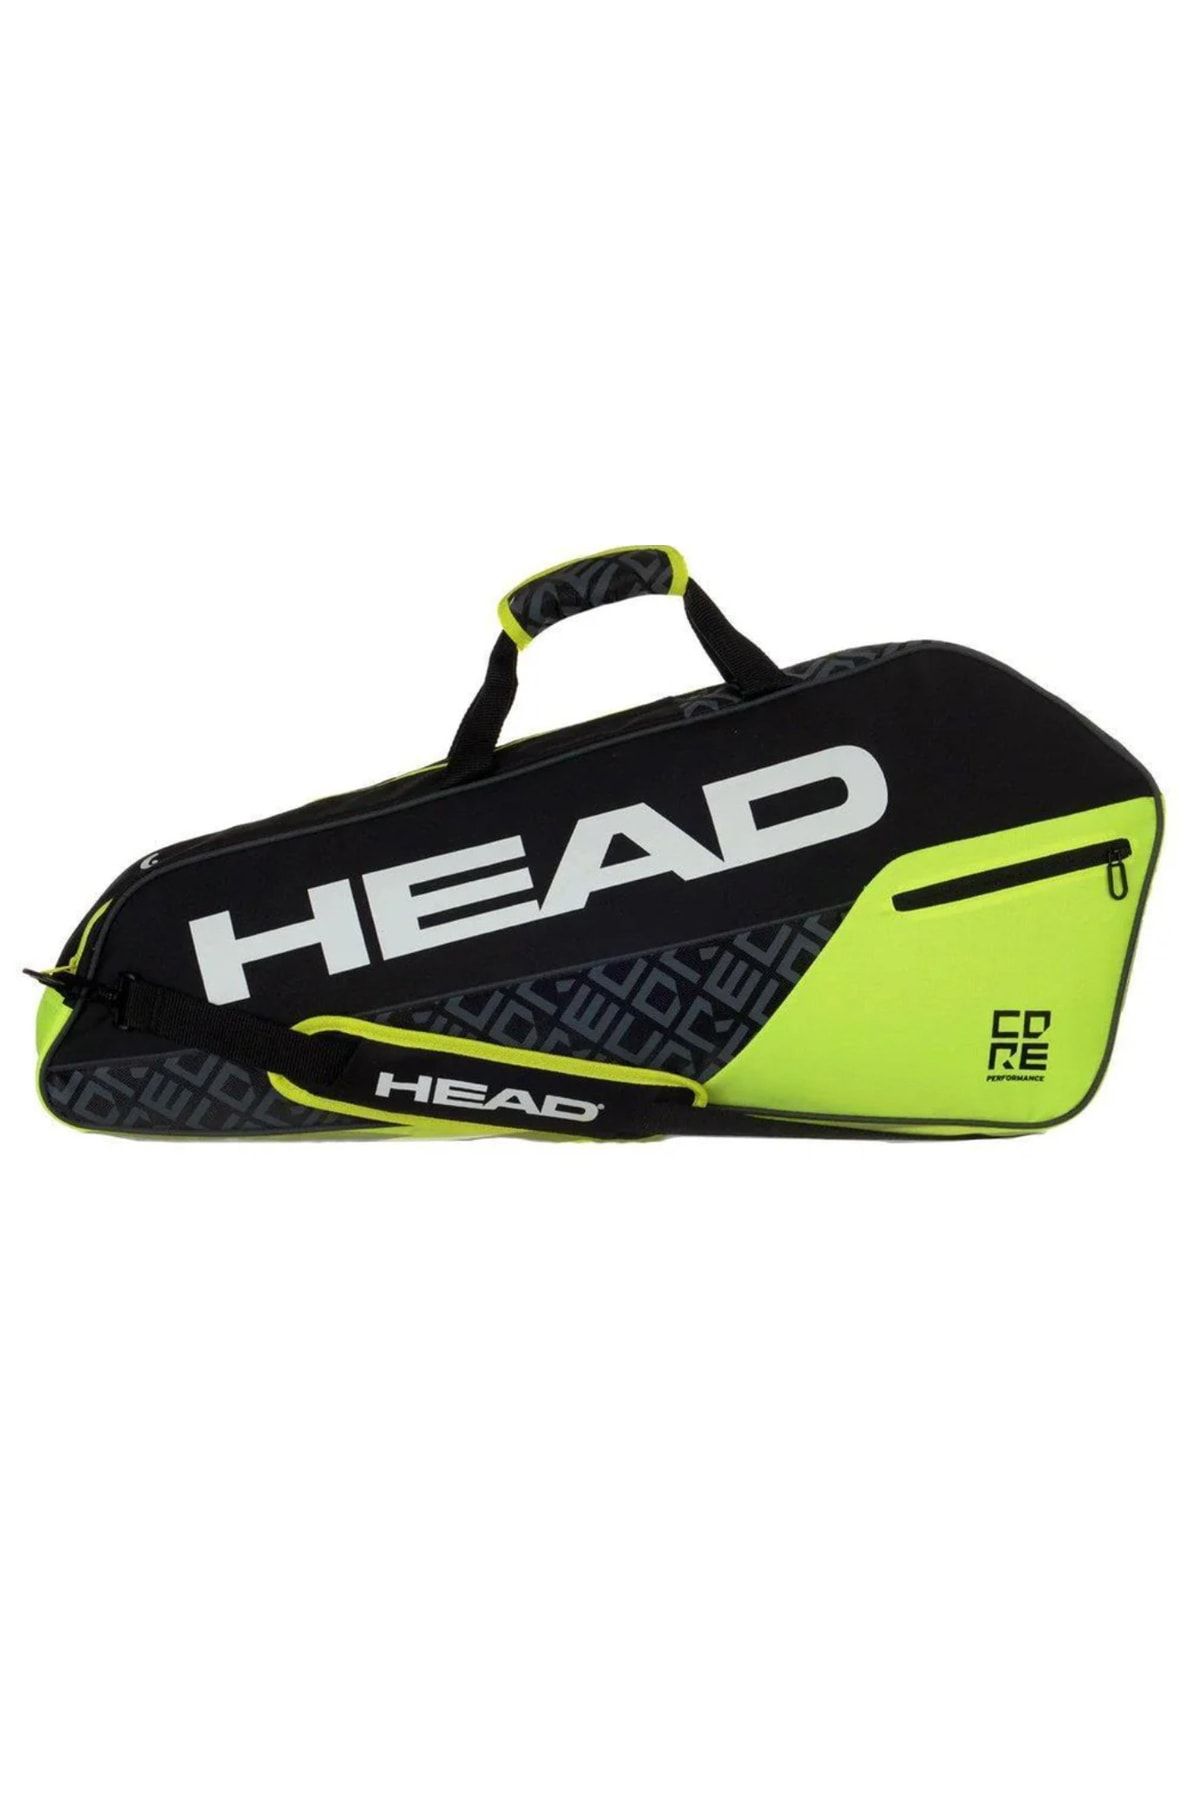 Head Core 3r Pro Tenis Çantası